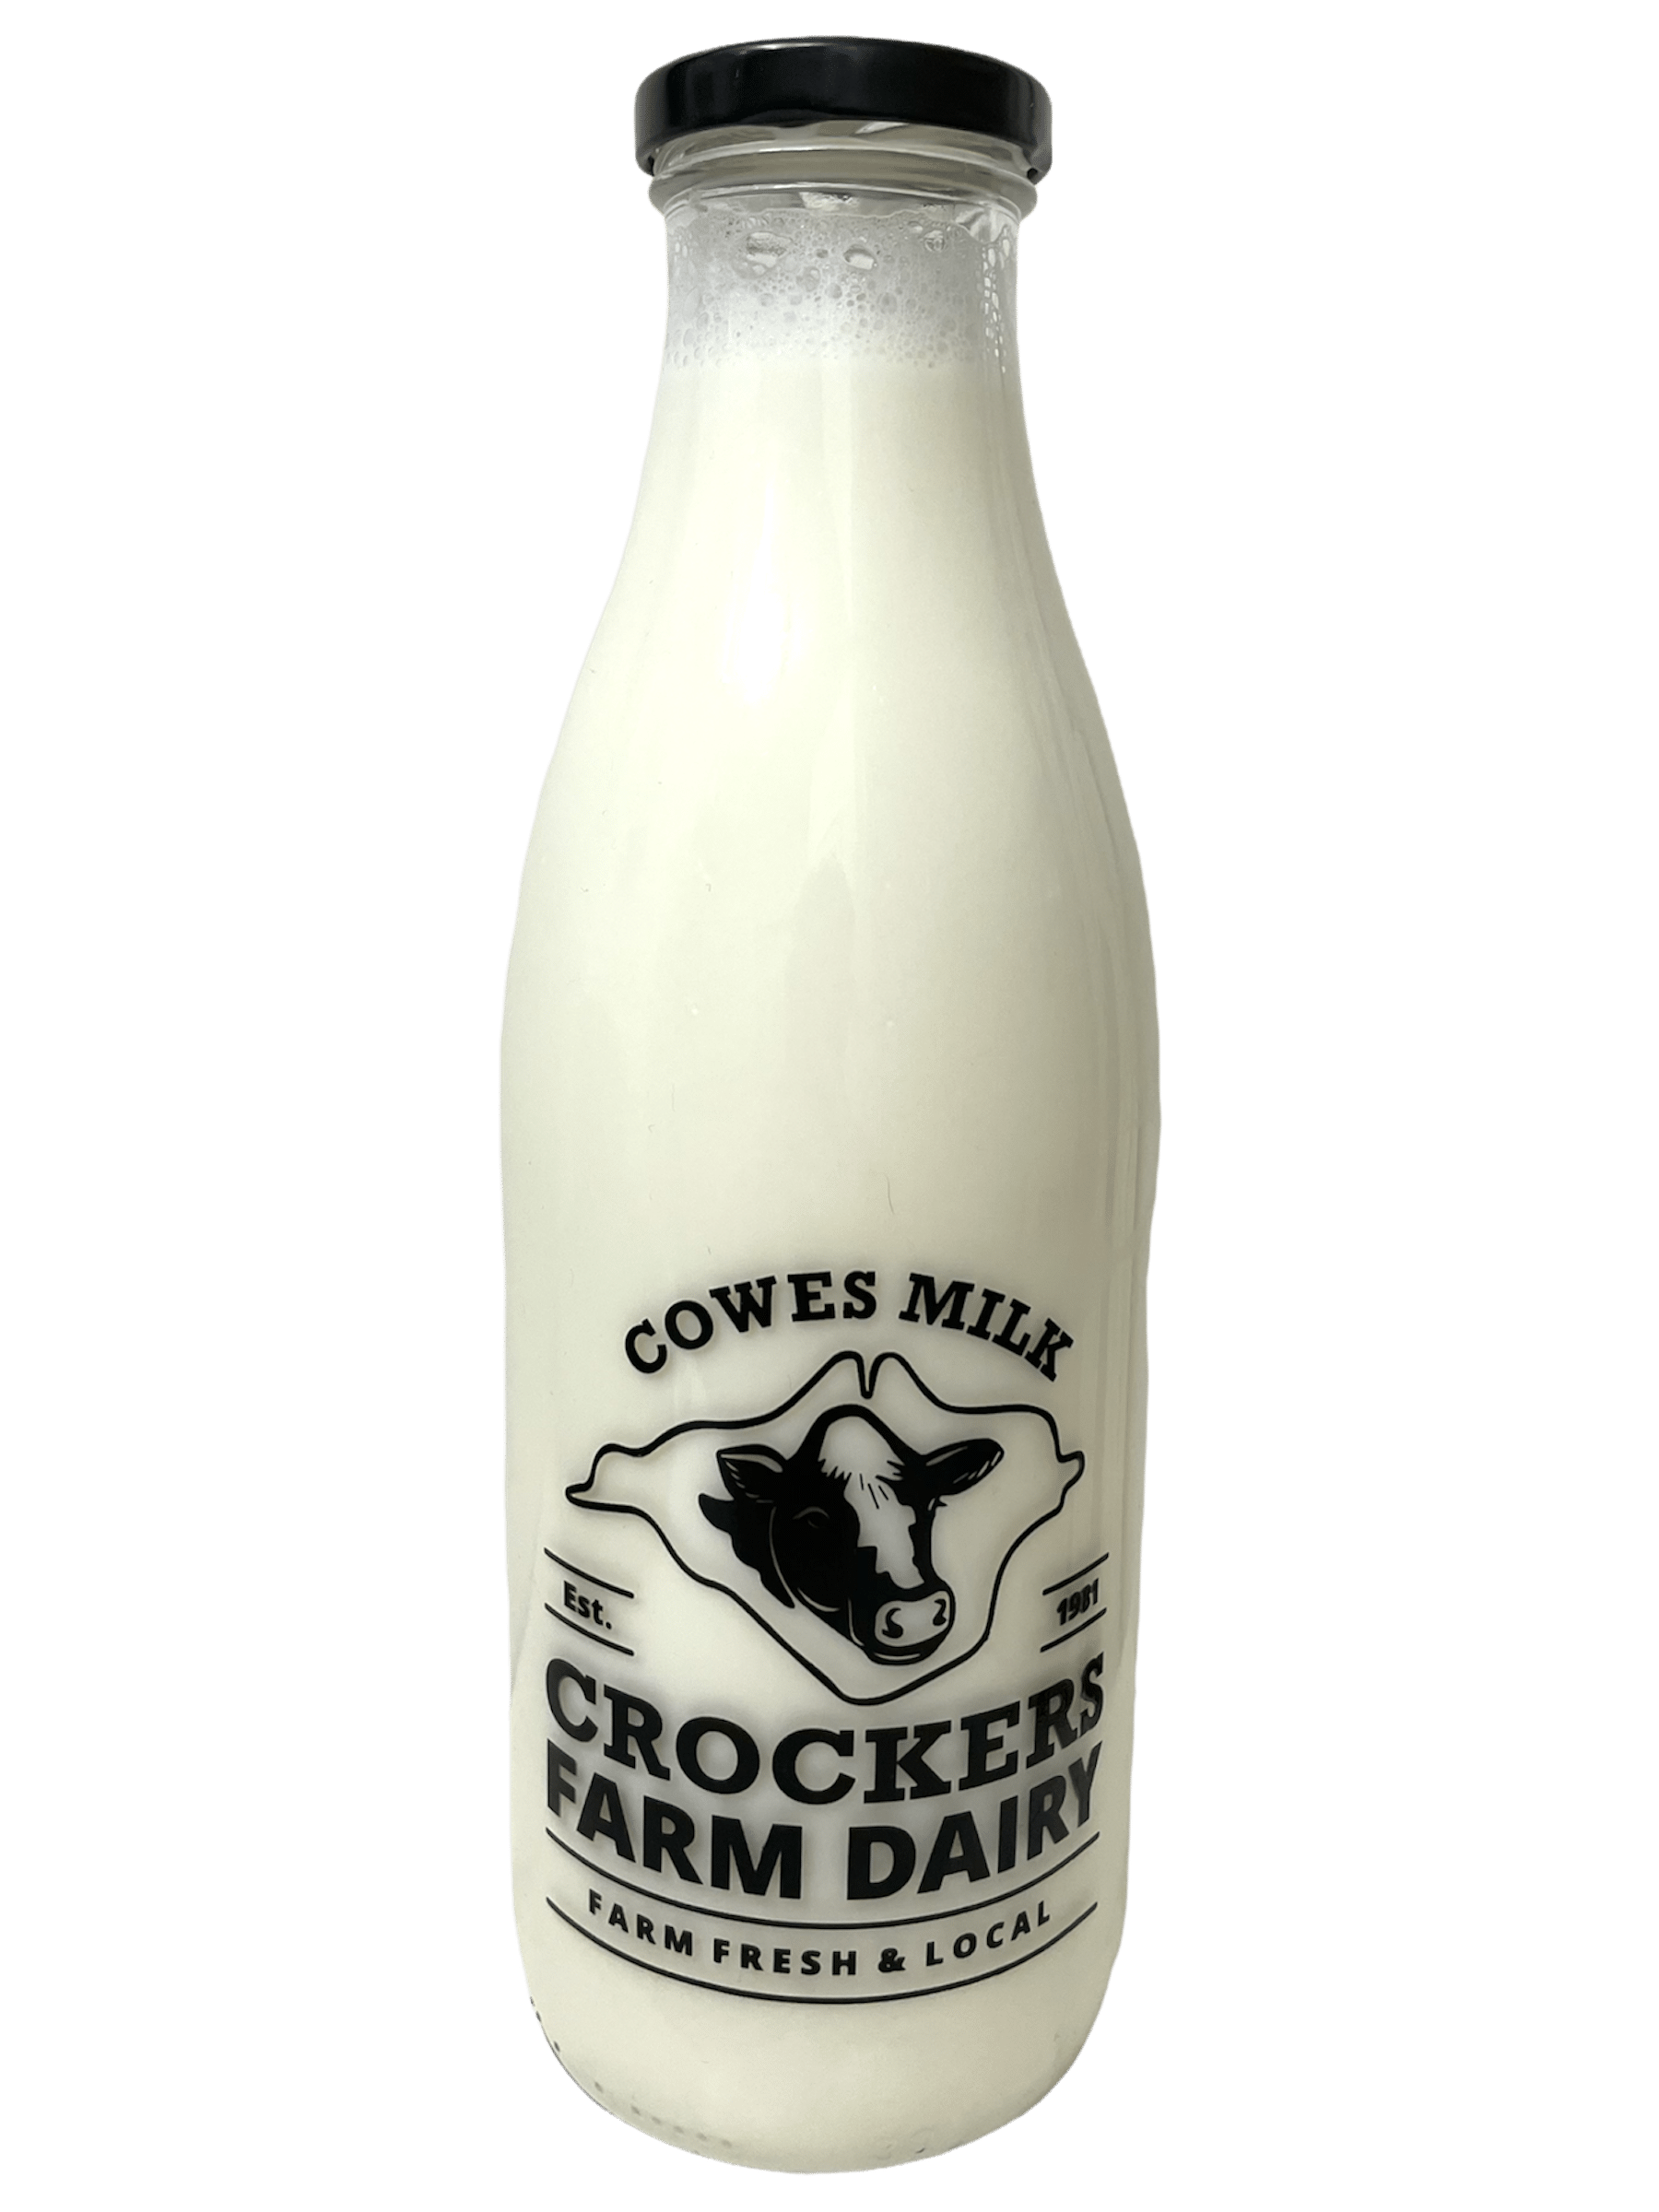 Cowes Milk Crockers Dairy - www.Kelis.info